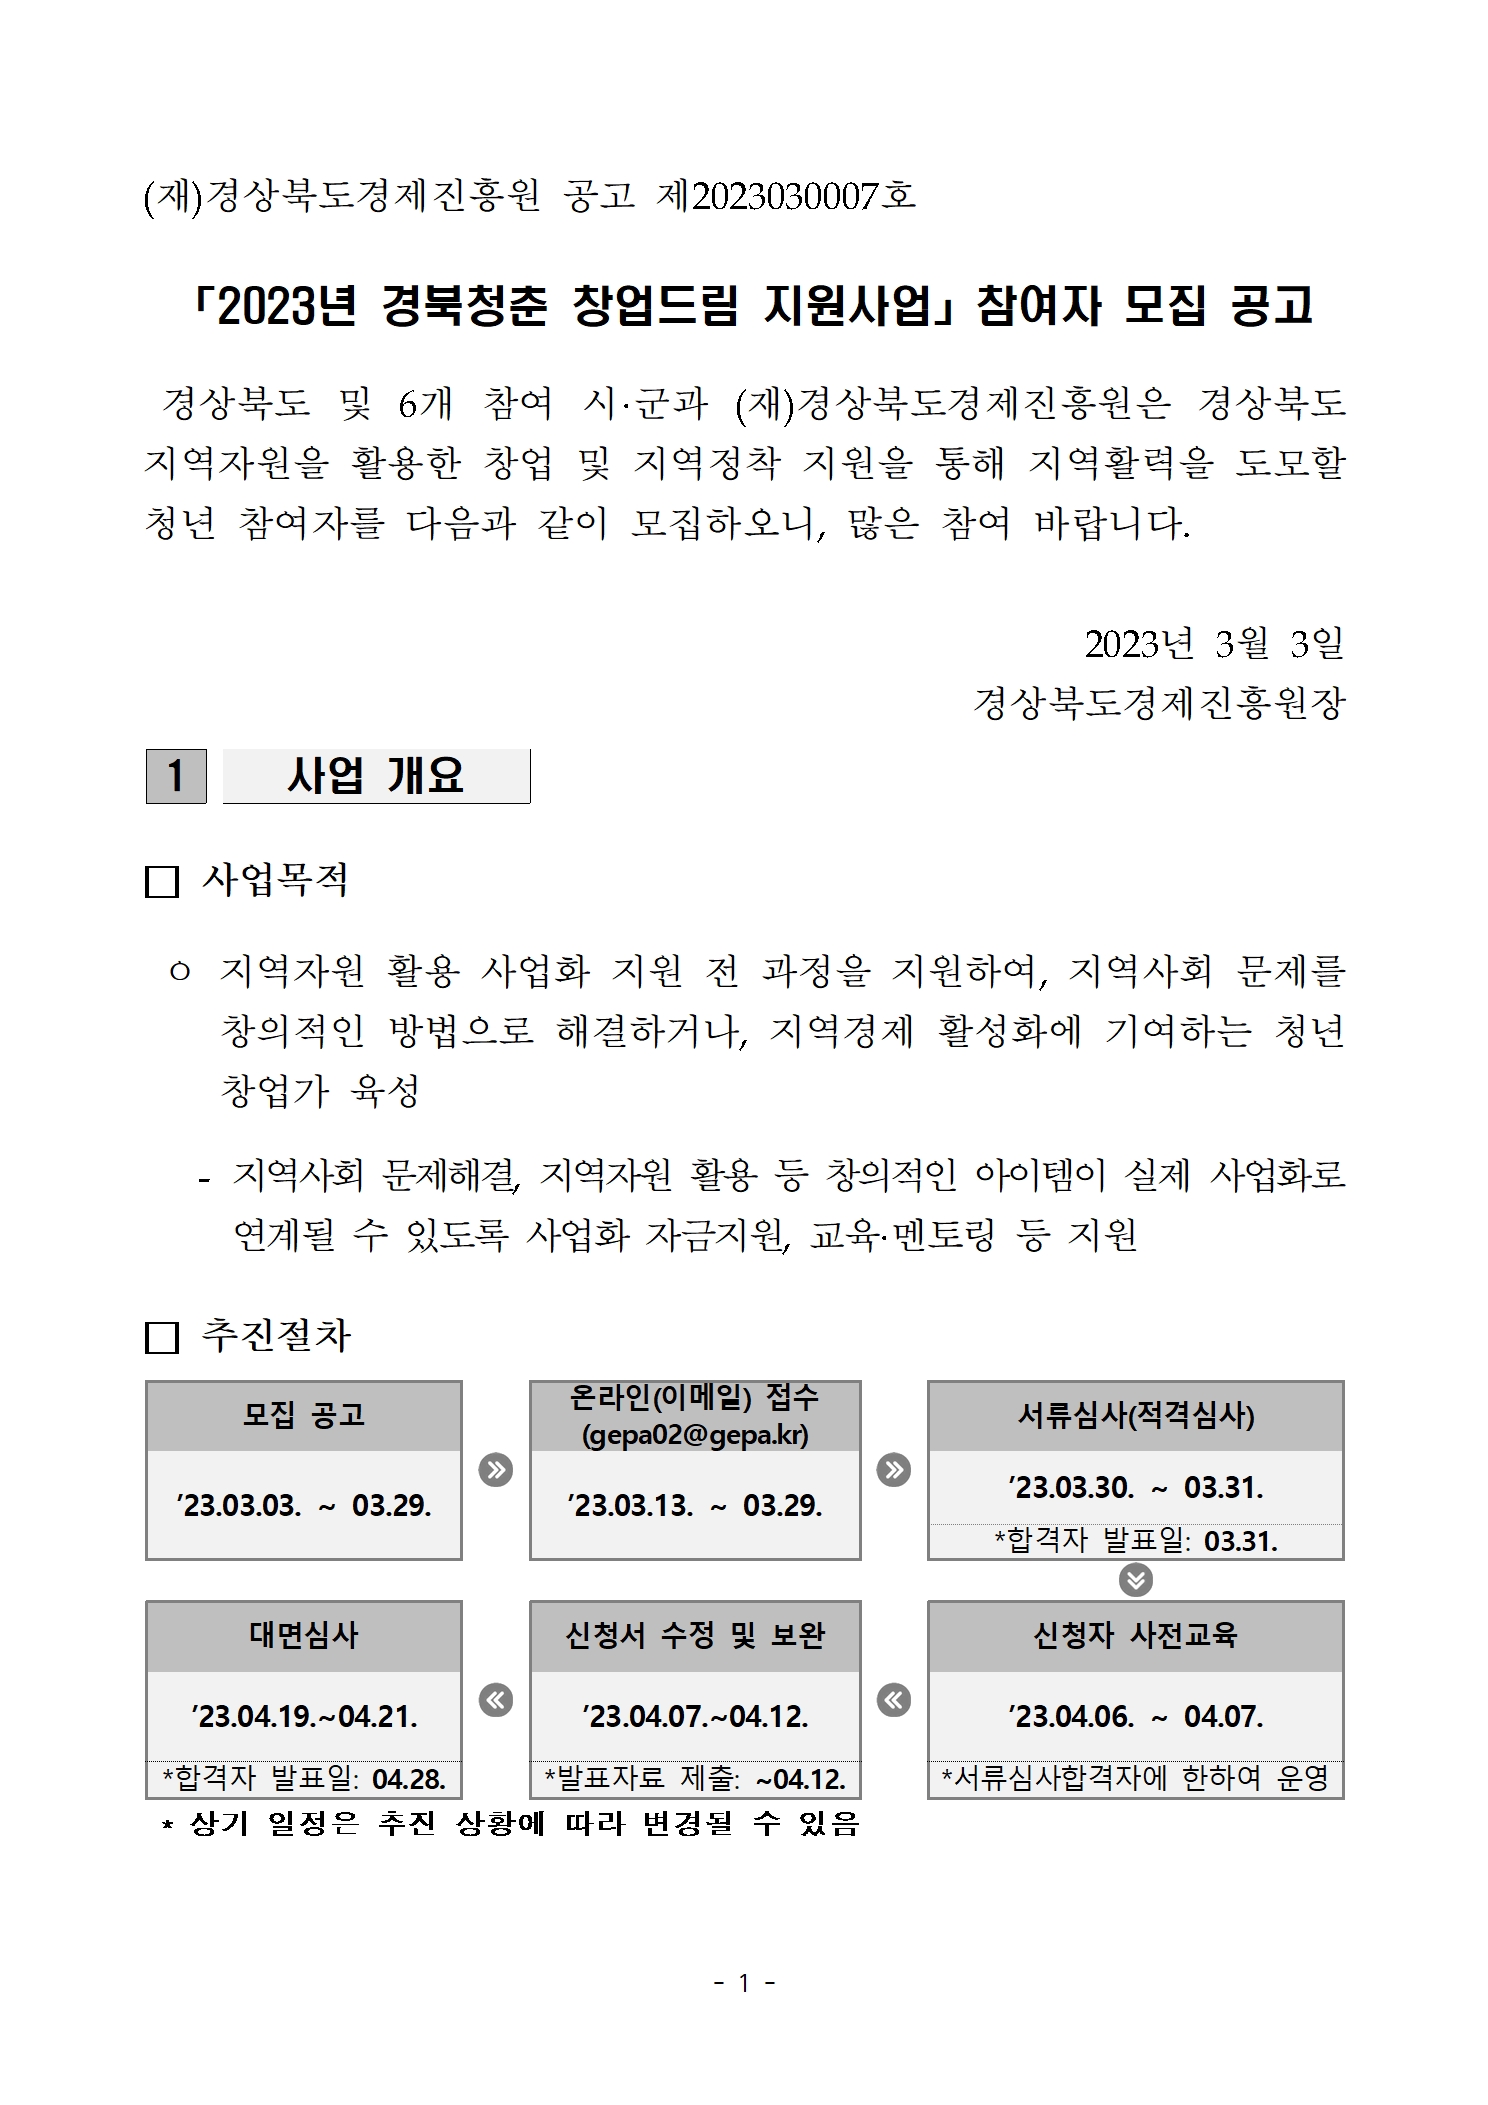 (타기관) 2023년 경북청춘 창업드림 지원사업 참여자 모집 공고 게시물 첨부이미지